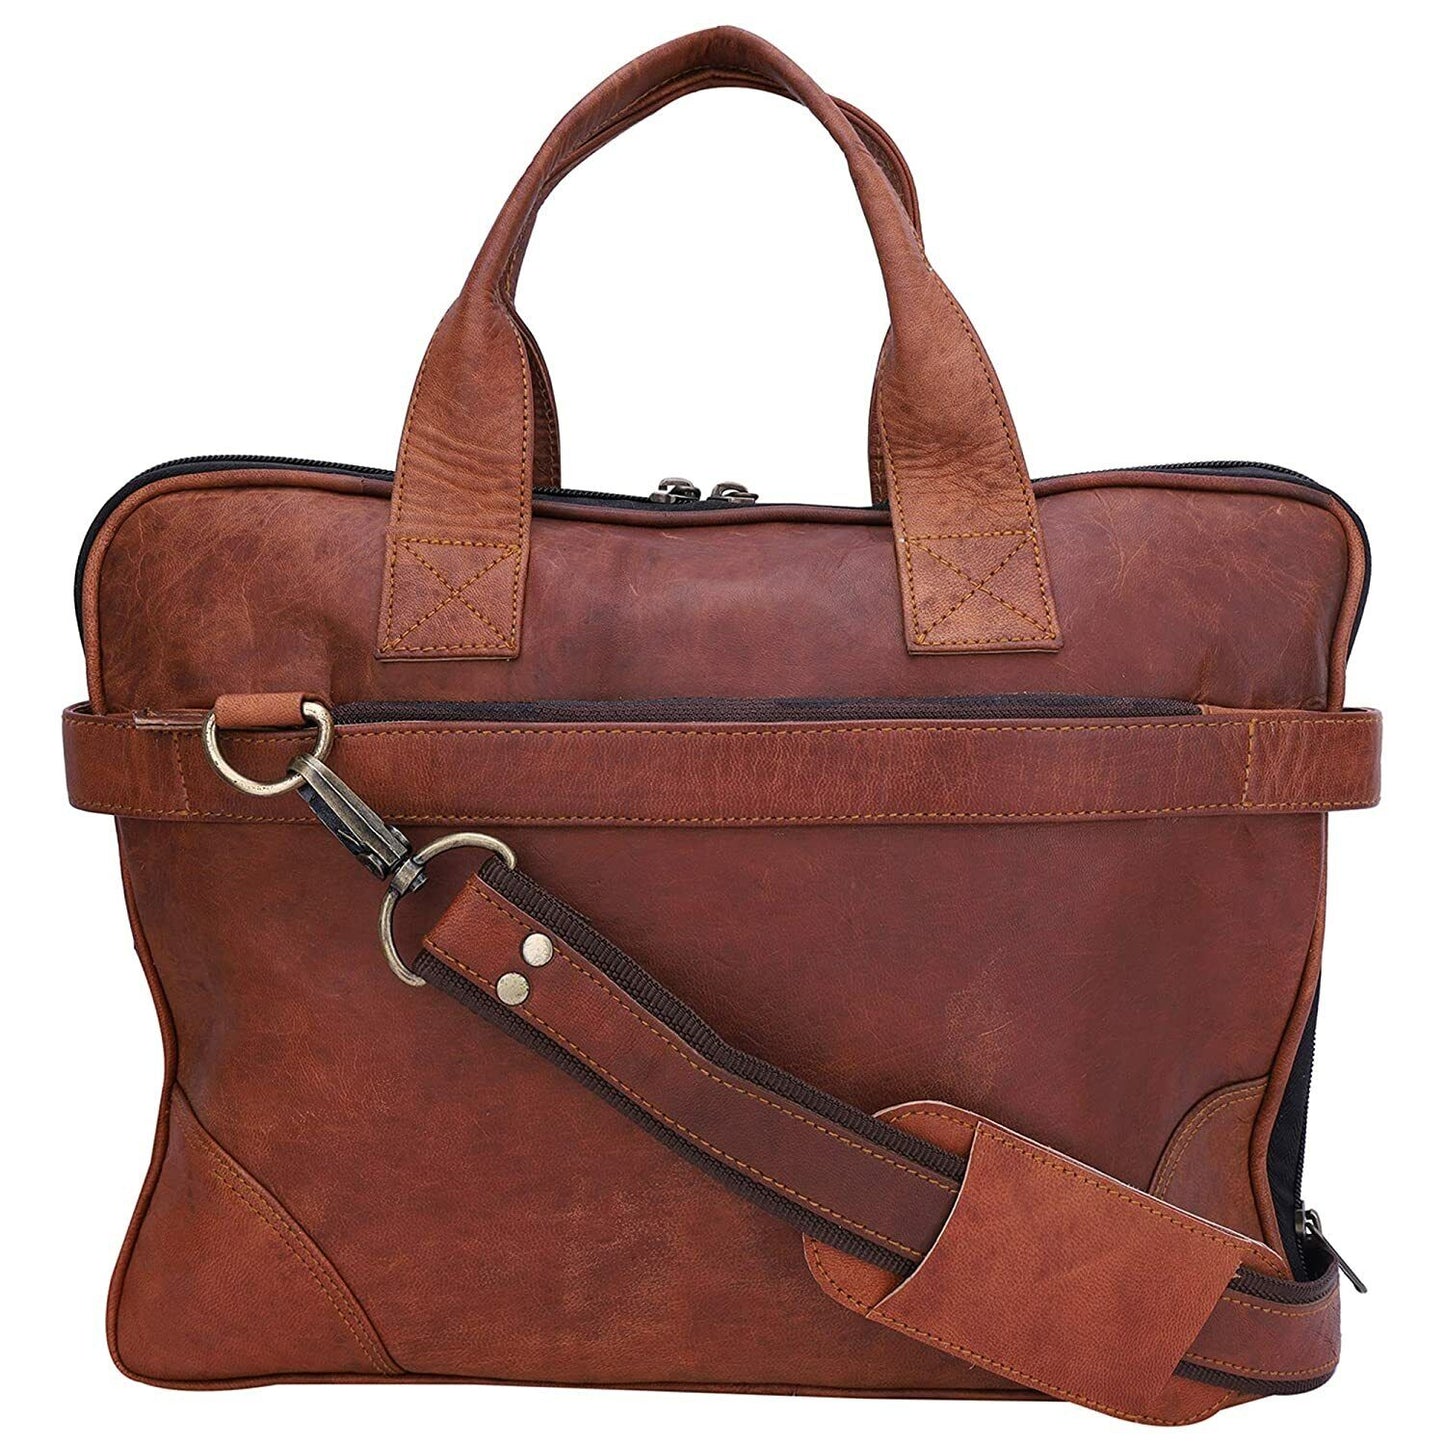 15" Laptop Sleev Briefcase Satchel Bag Men's Leather Genuine Vintage Messenger